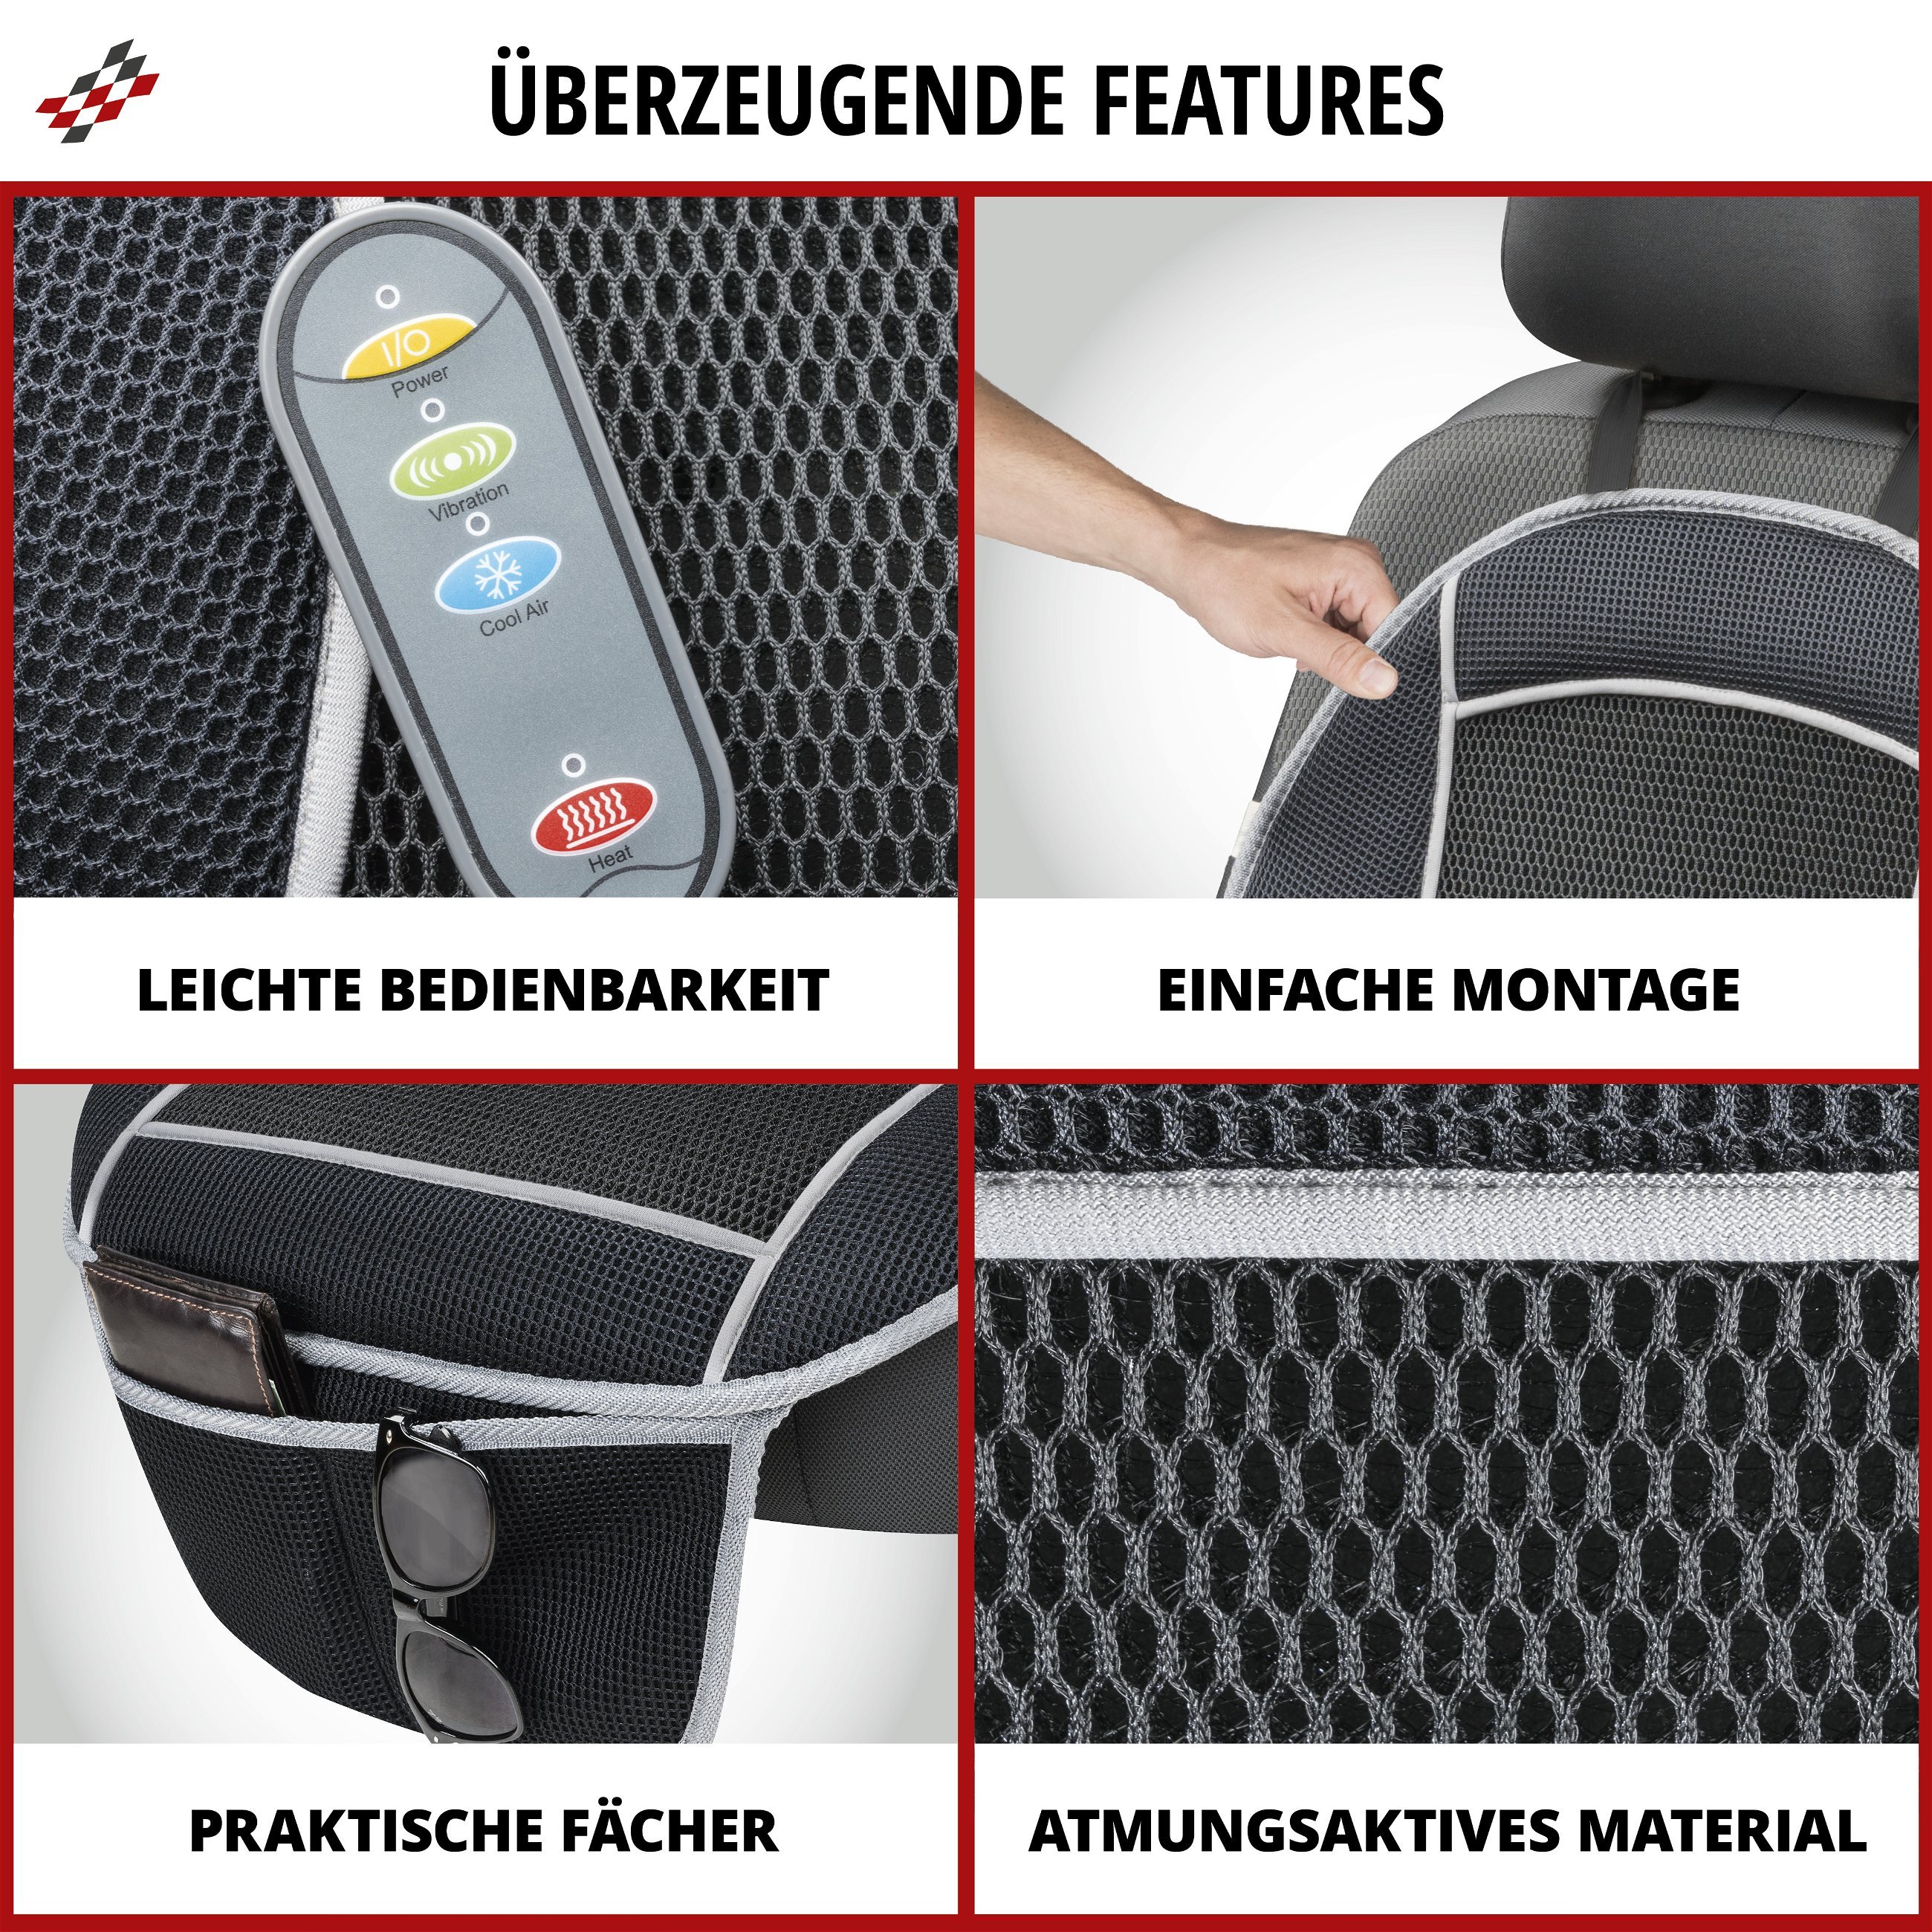 PKW-Sitzauflage CoolHeat, Auto-Sitzaufleger mit Heiz-, Kühl- und Massagefunktion schwarz